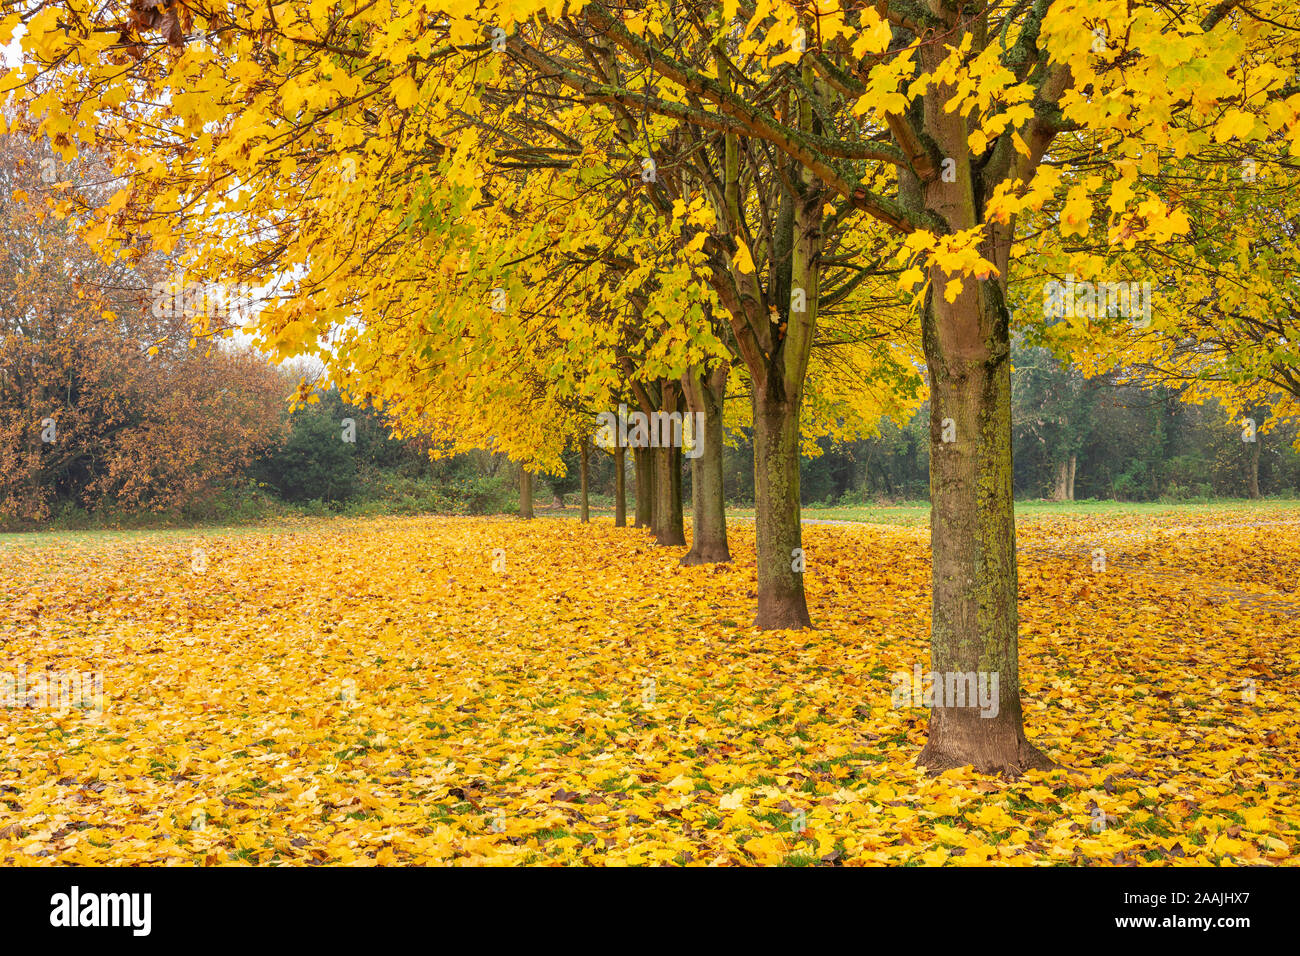 Blätter im Herbst uk Bäume im Herbst Herbst uk Allee der Bäume, deren Blätter im Herbst Reihe von Bäumen mit Herbstfarben England uk gb Europa Stockfoto